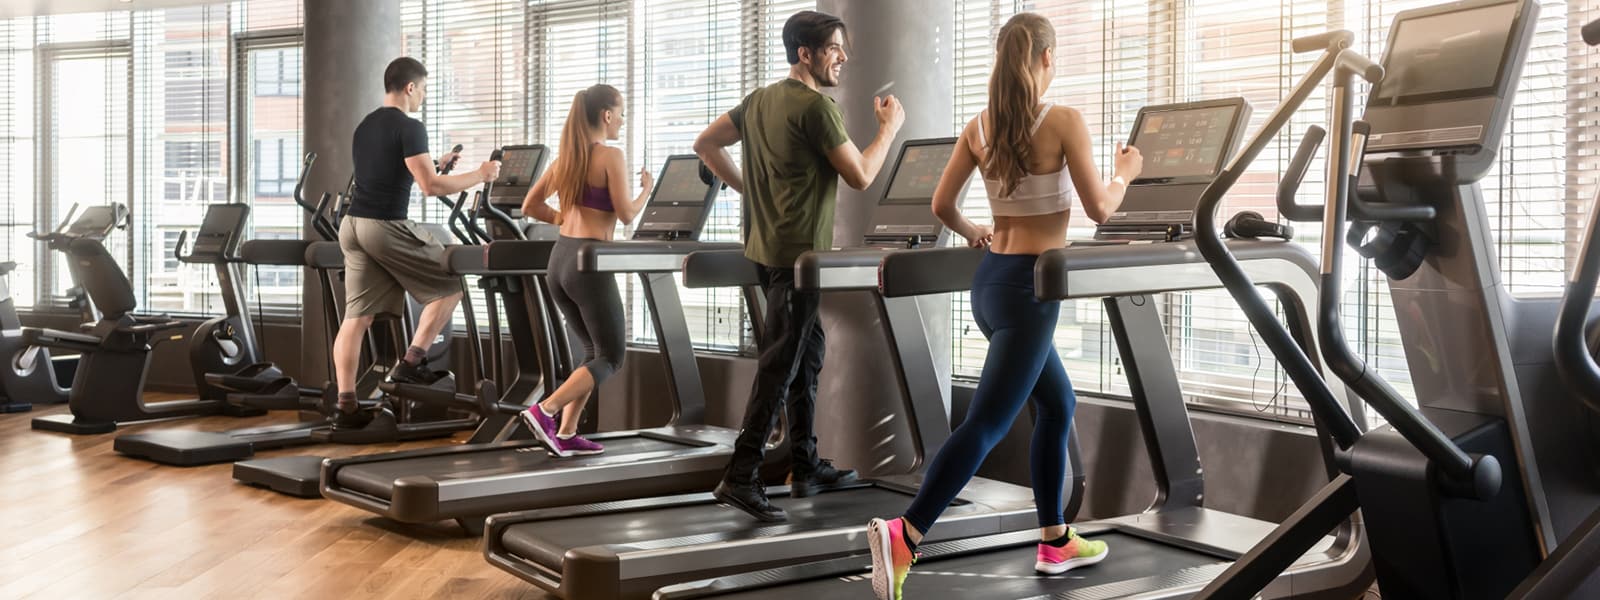 Hälsosammare gym med hjälp av både partikelrening och goda dofter som påverkar ditt humör